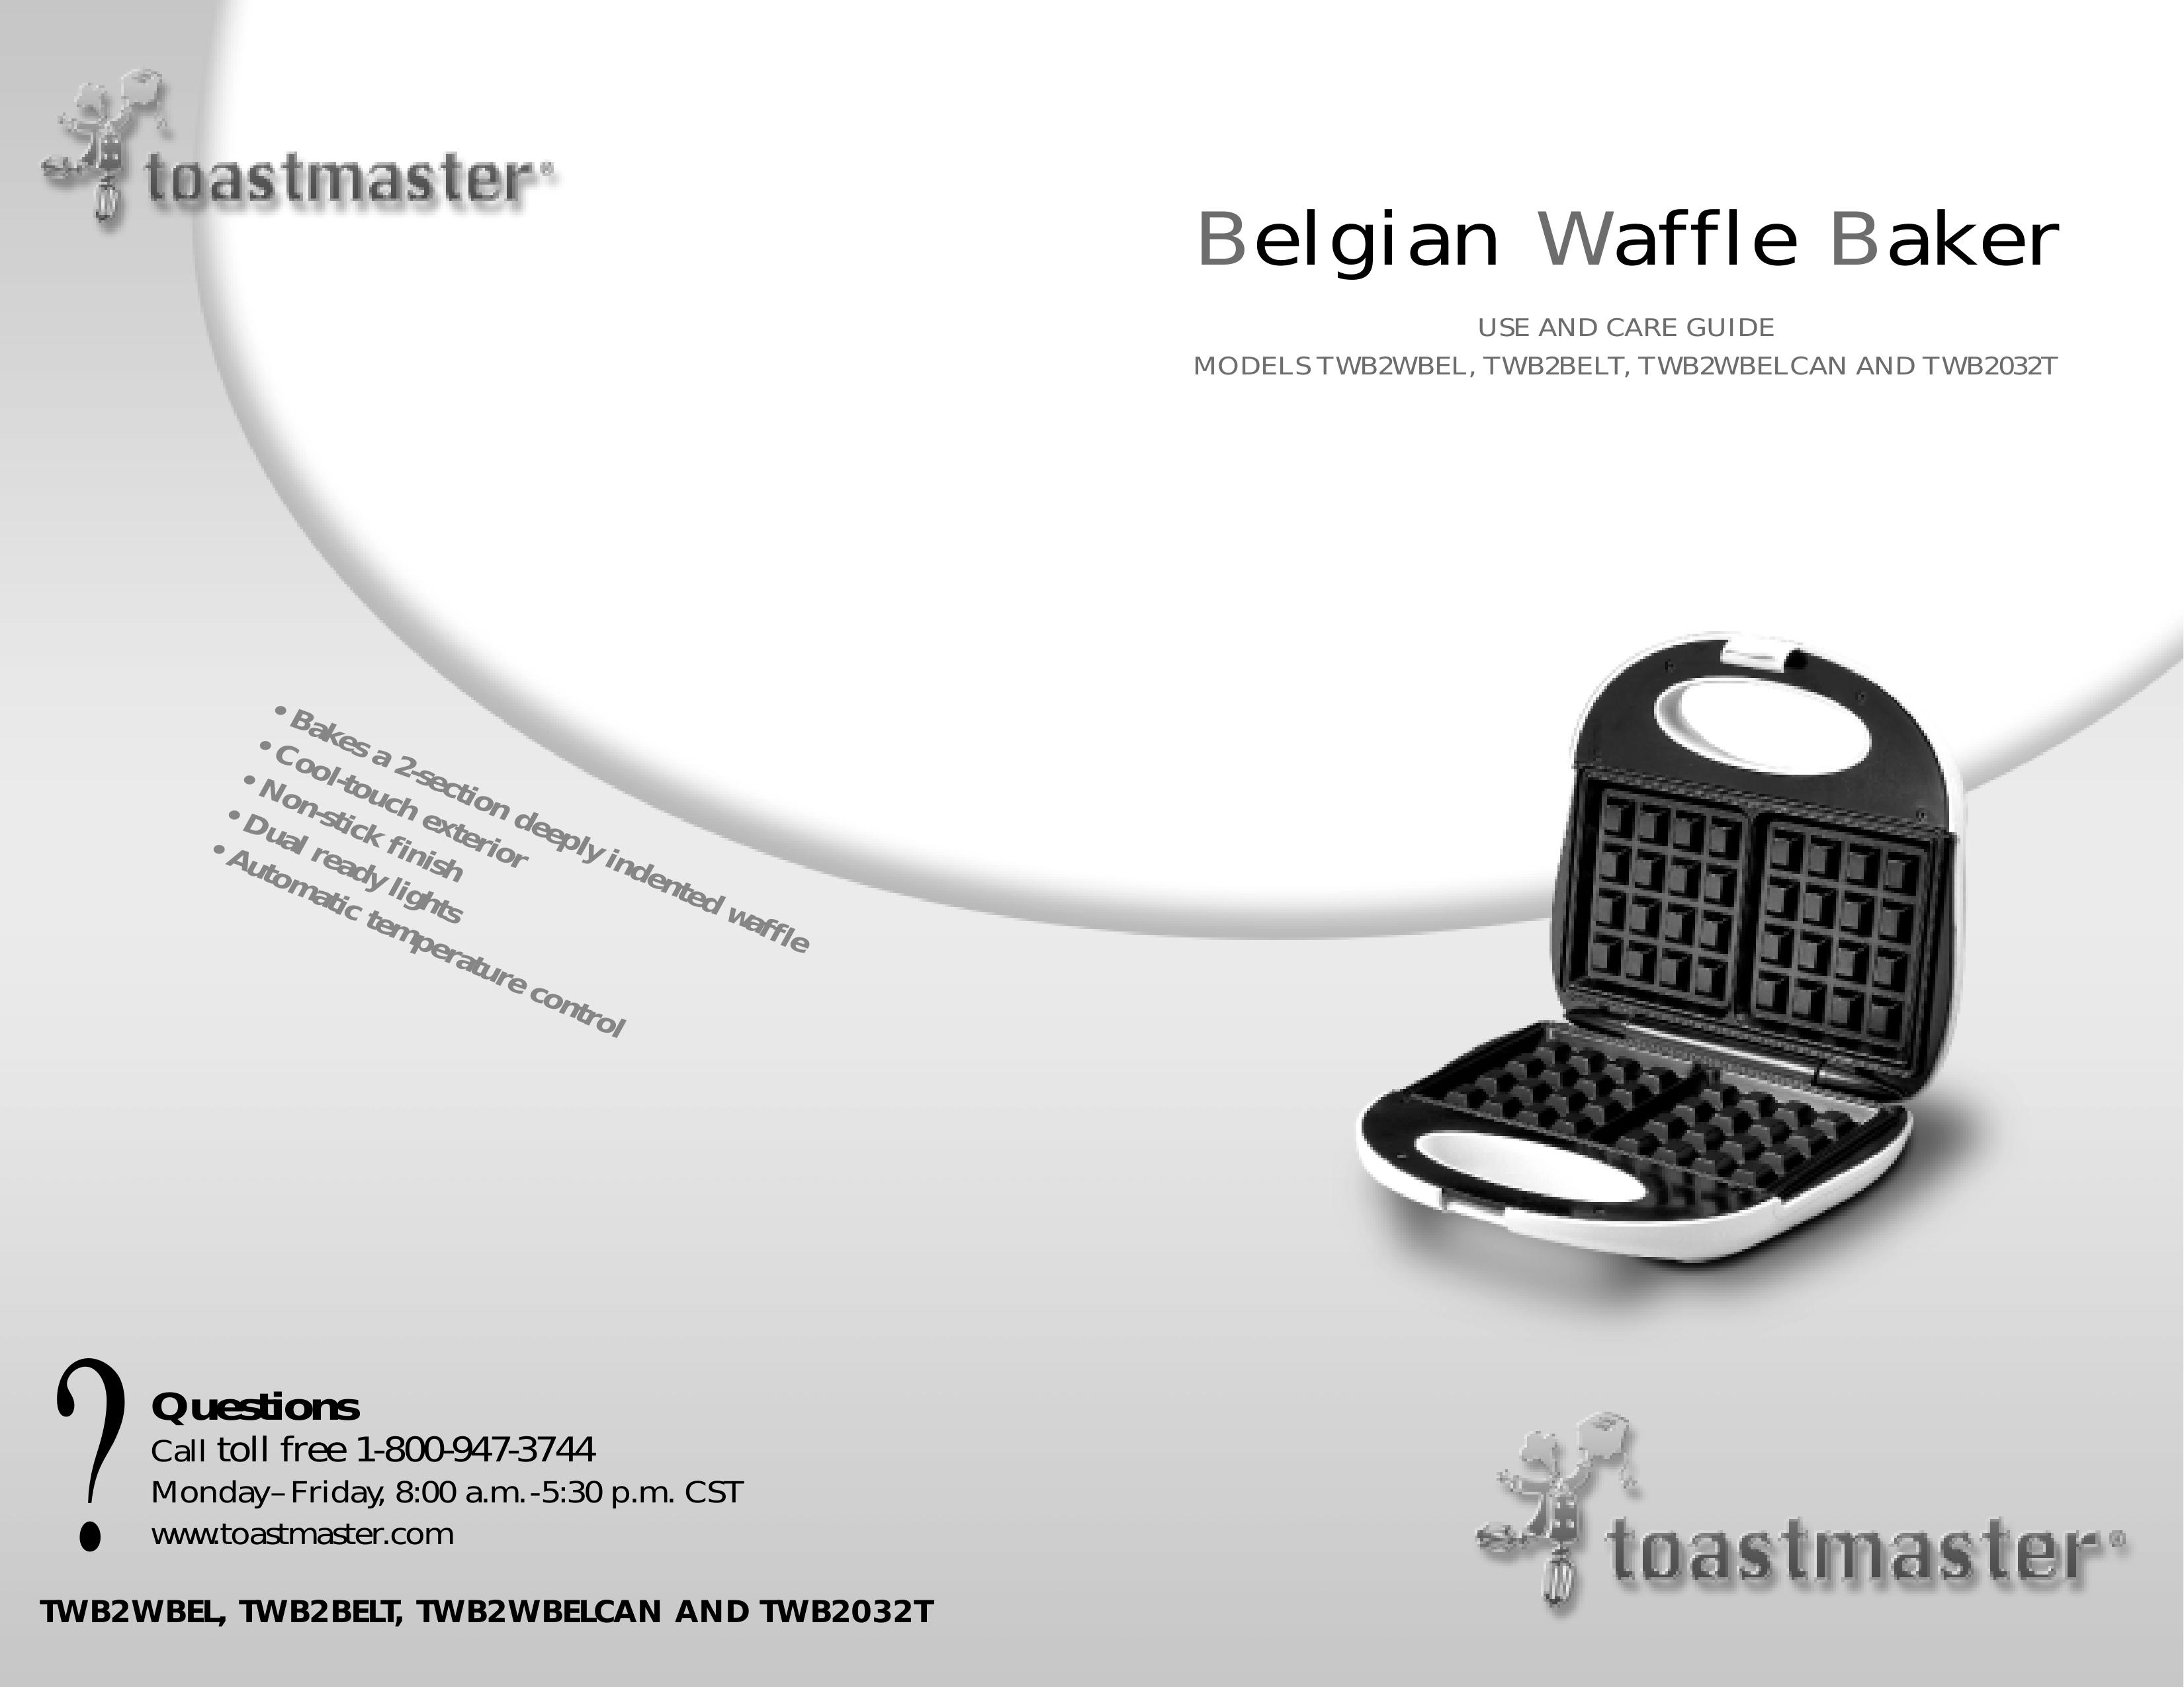 Toastmaster TWB2WBEL Waffle Iron User Manual